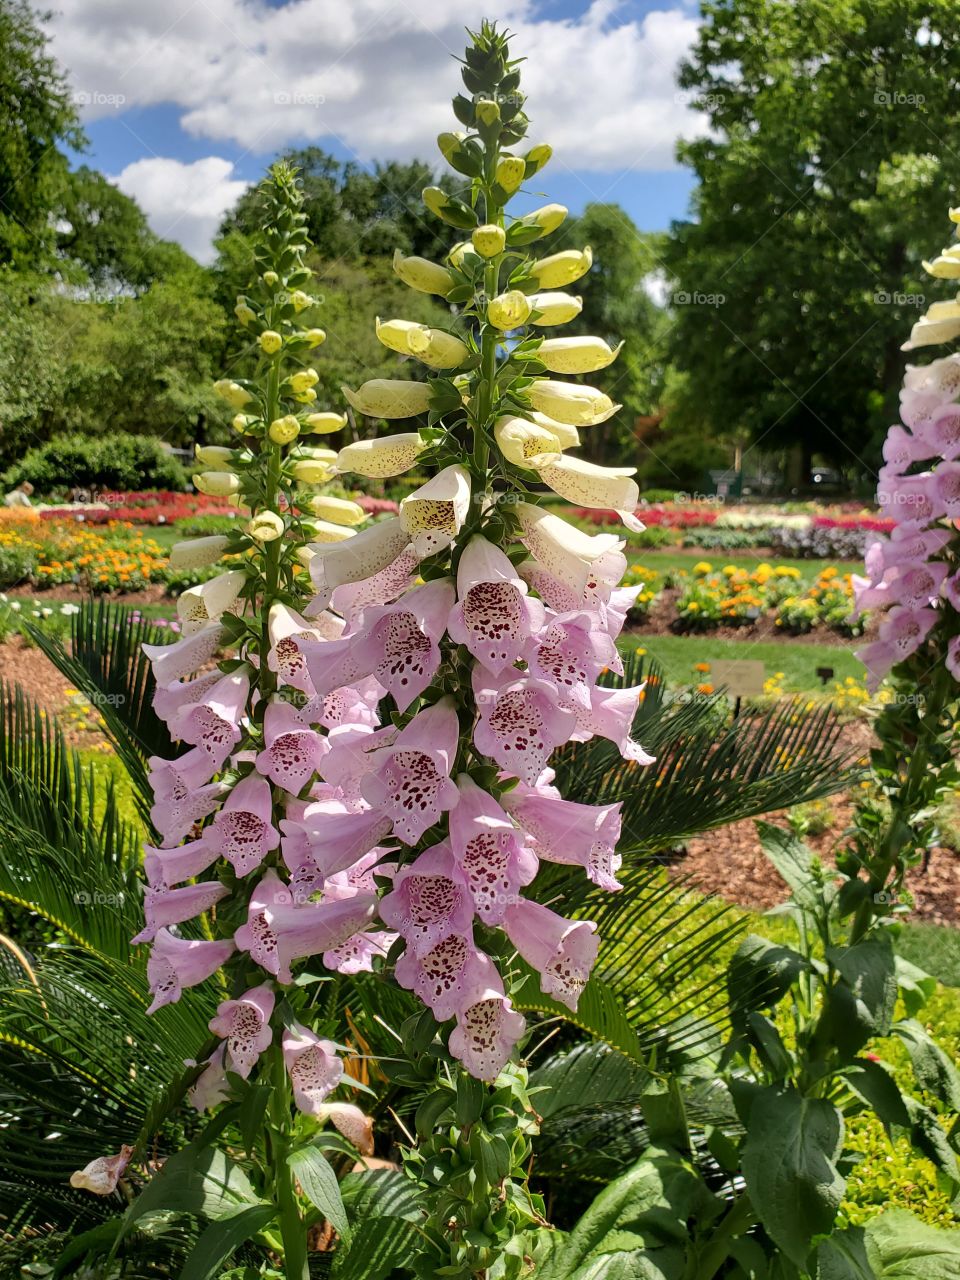 Flowers Dallas Arboretum